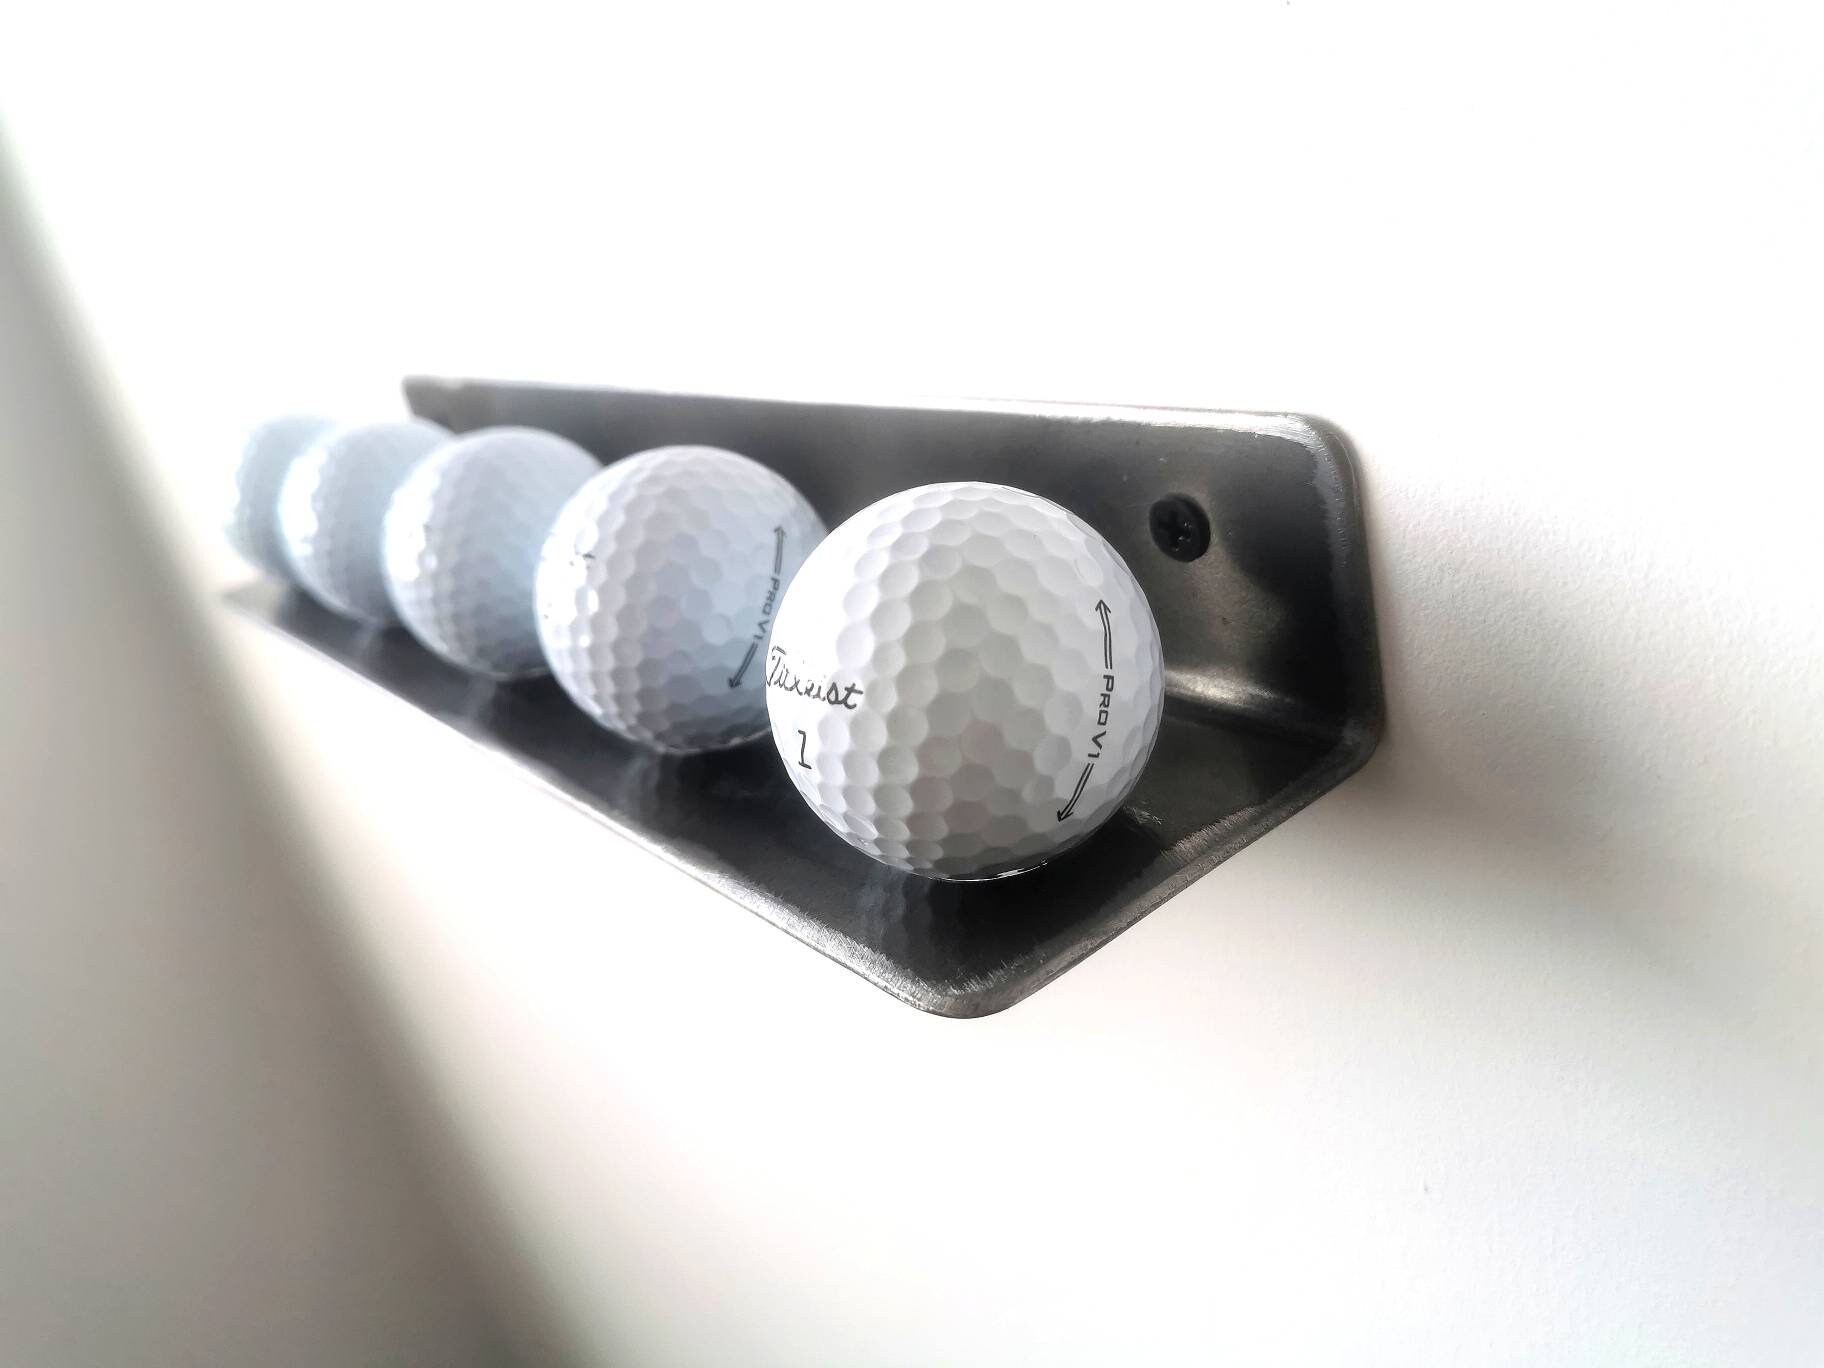 12 Golf Ball Display Rack